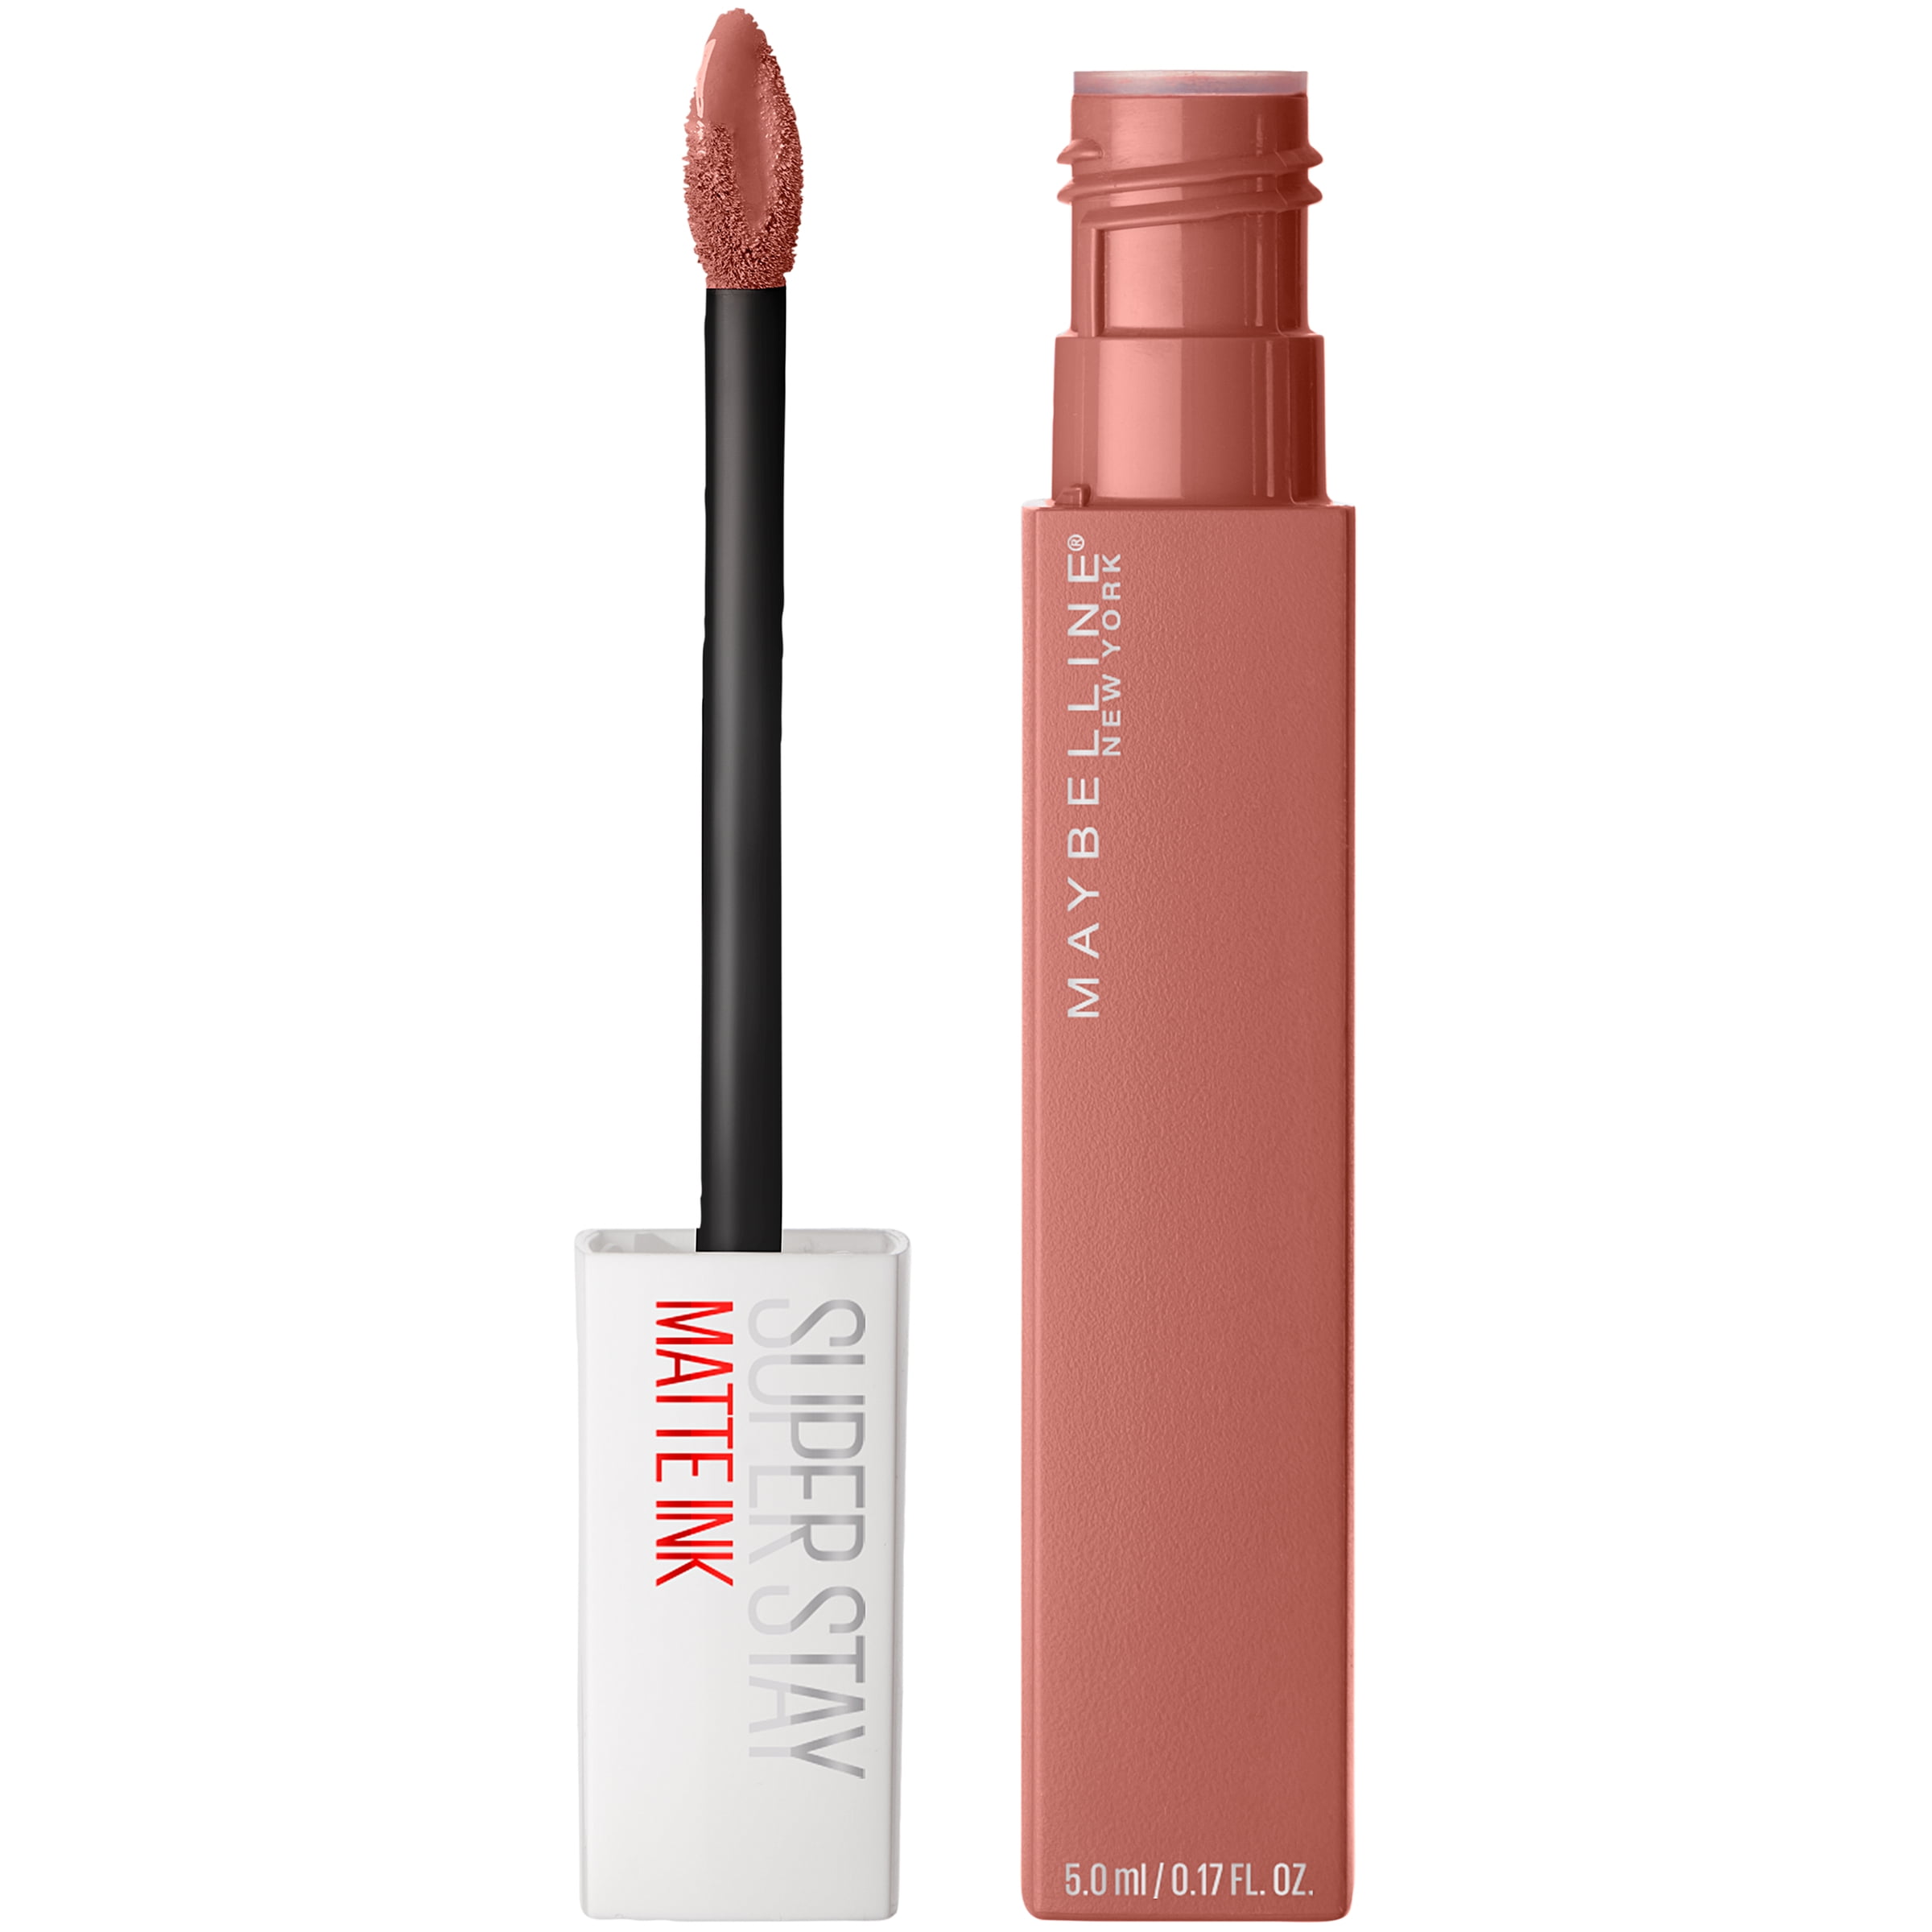 Seductress Stay Ink Un-nude Matte Super Maybelline Liquid Lipstick,